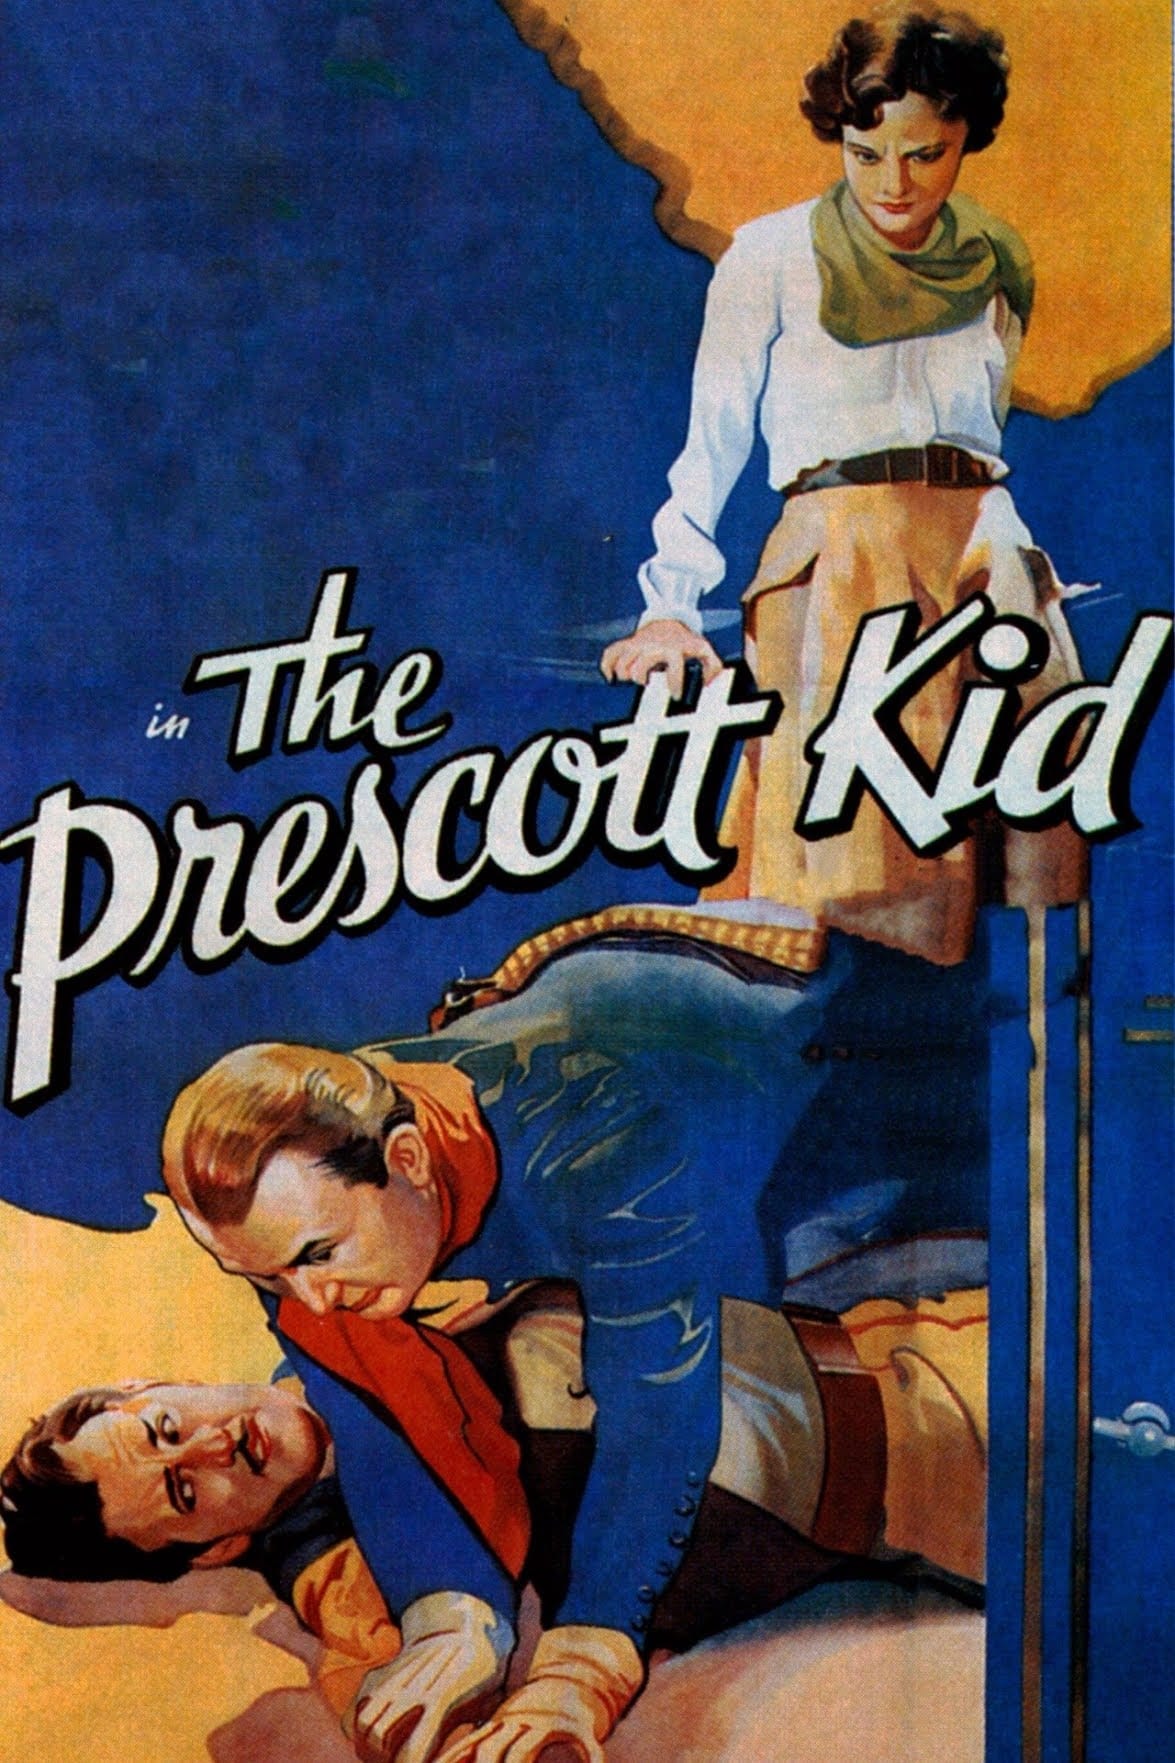 Prescott Kid (1934)